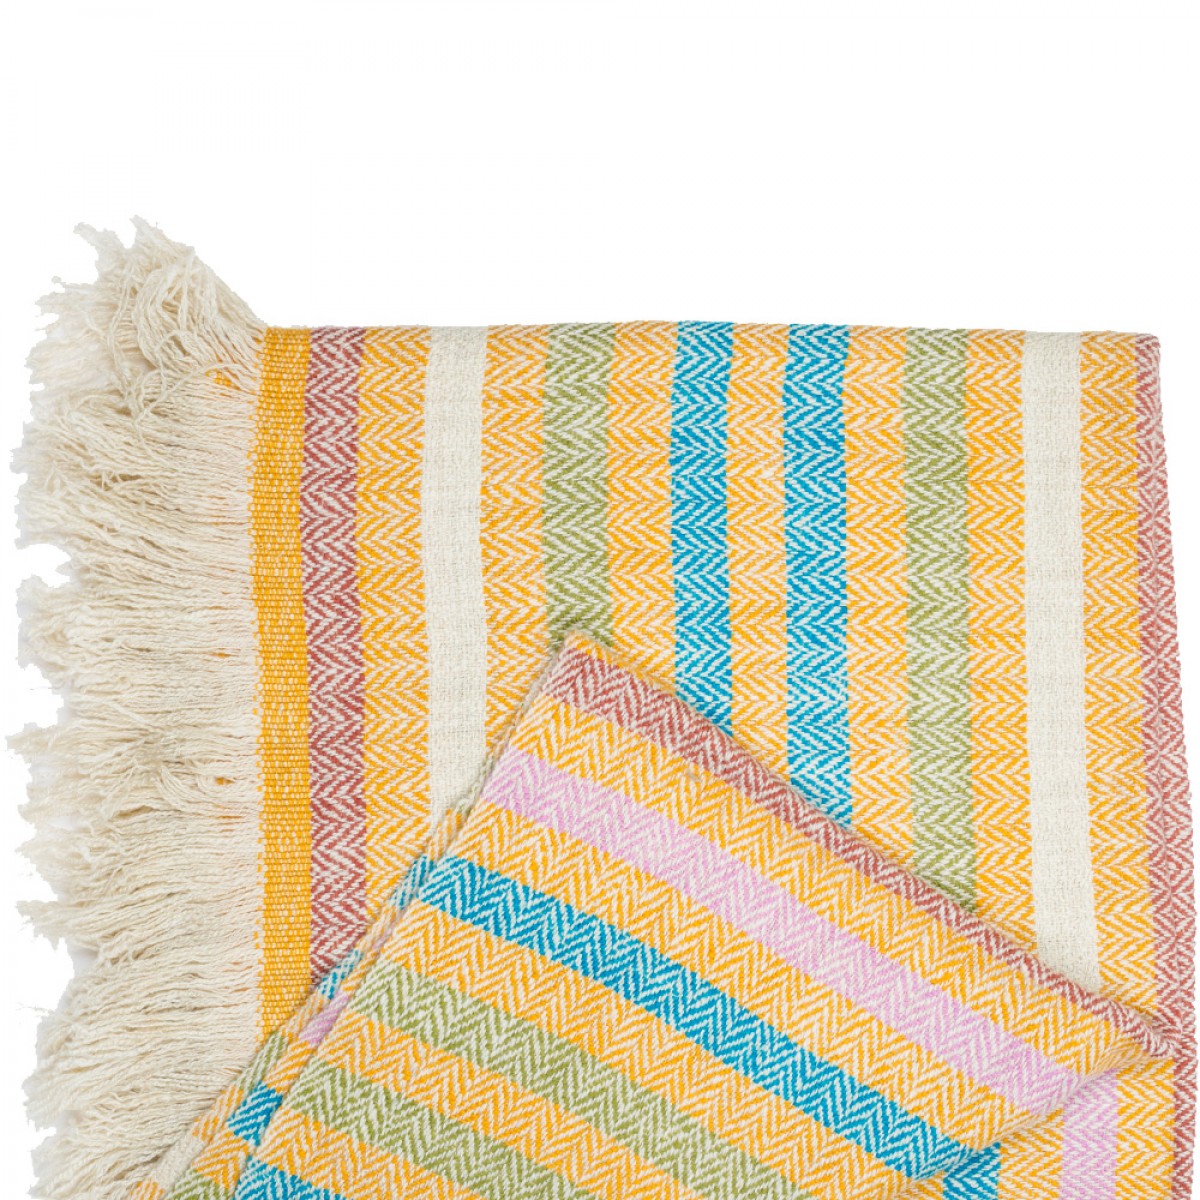 Teal & Yellow Stripes Herringbone Weave Cashmere Blanket